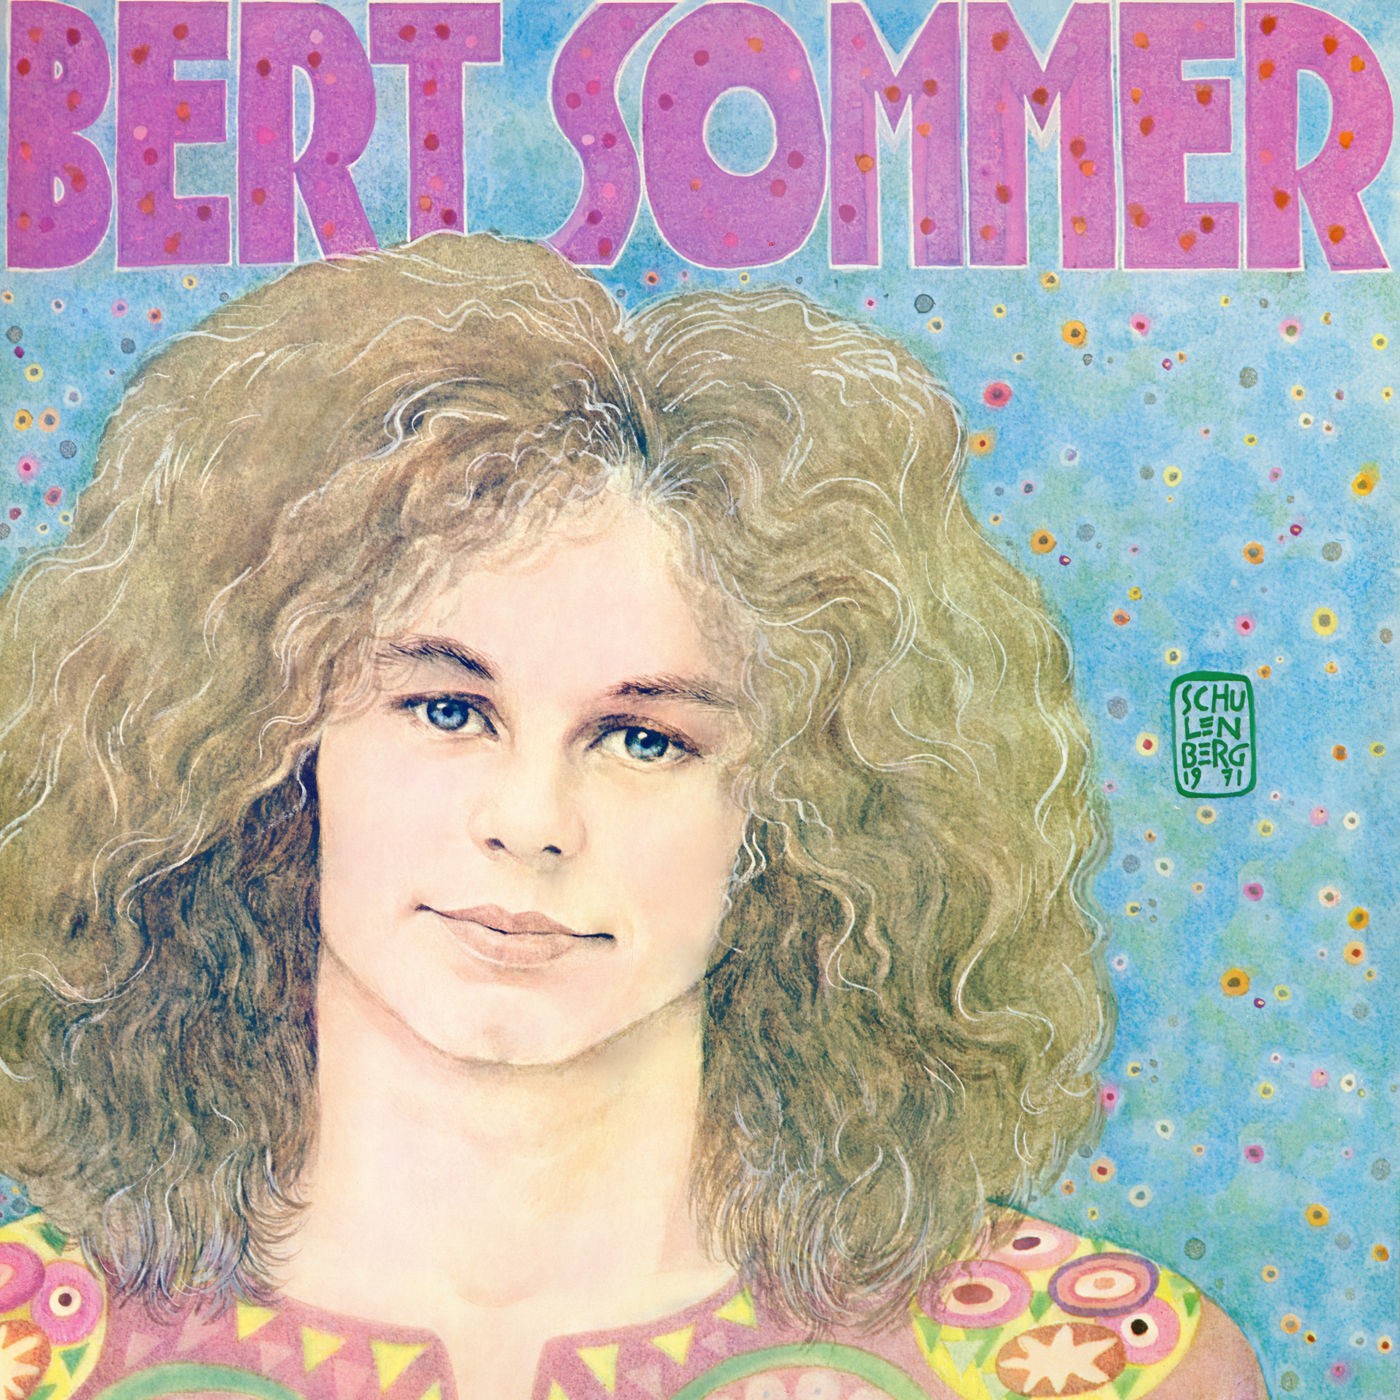 Bert Sommer - Bert Sommer (1971/2021) [FLAC 24bit/192kHz]